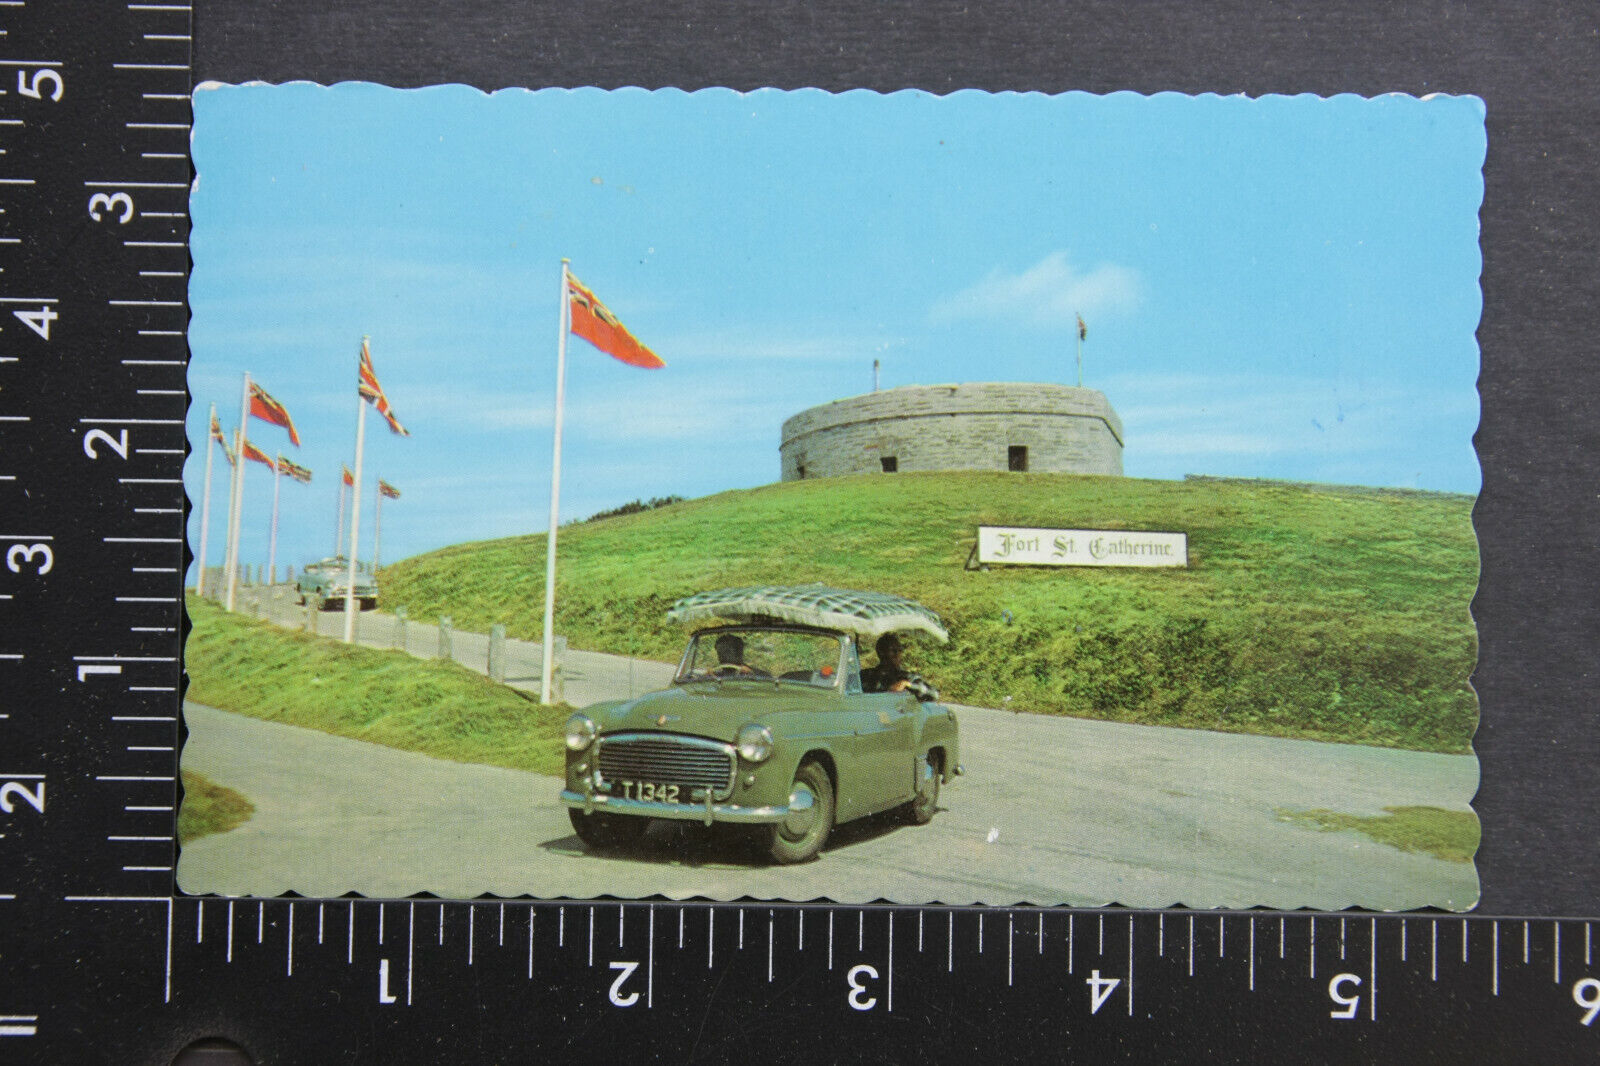 Fort St Catherine Bermuda fringe top car 1970 Posted Postcard VINTAGE 934